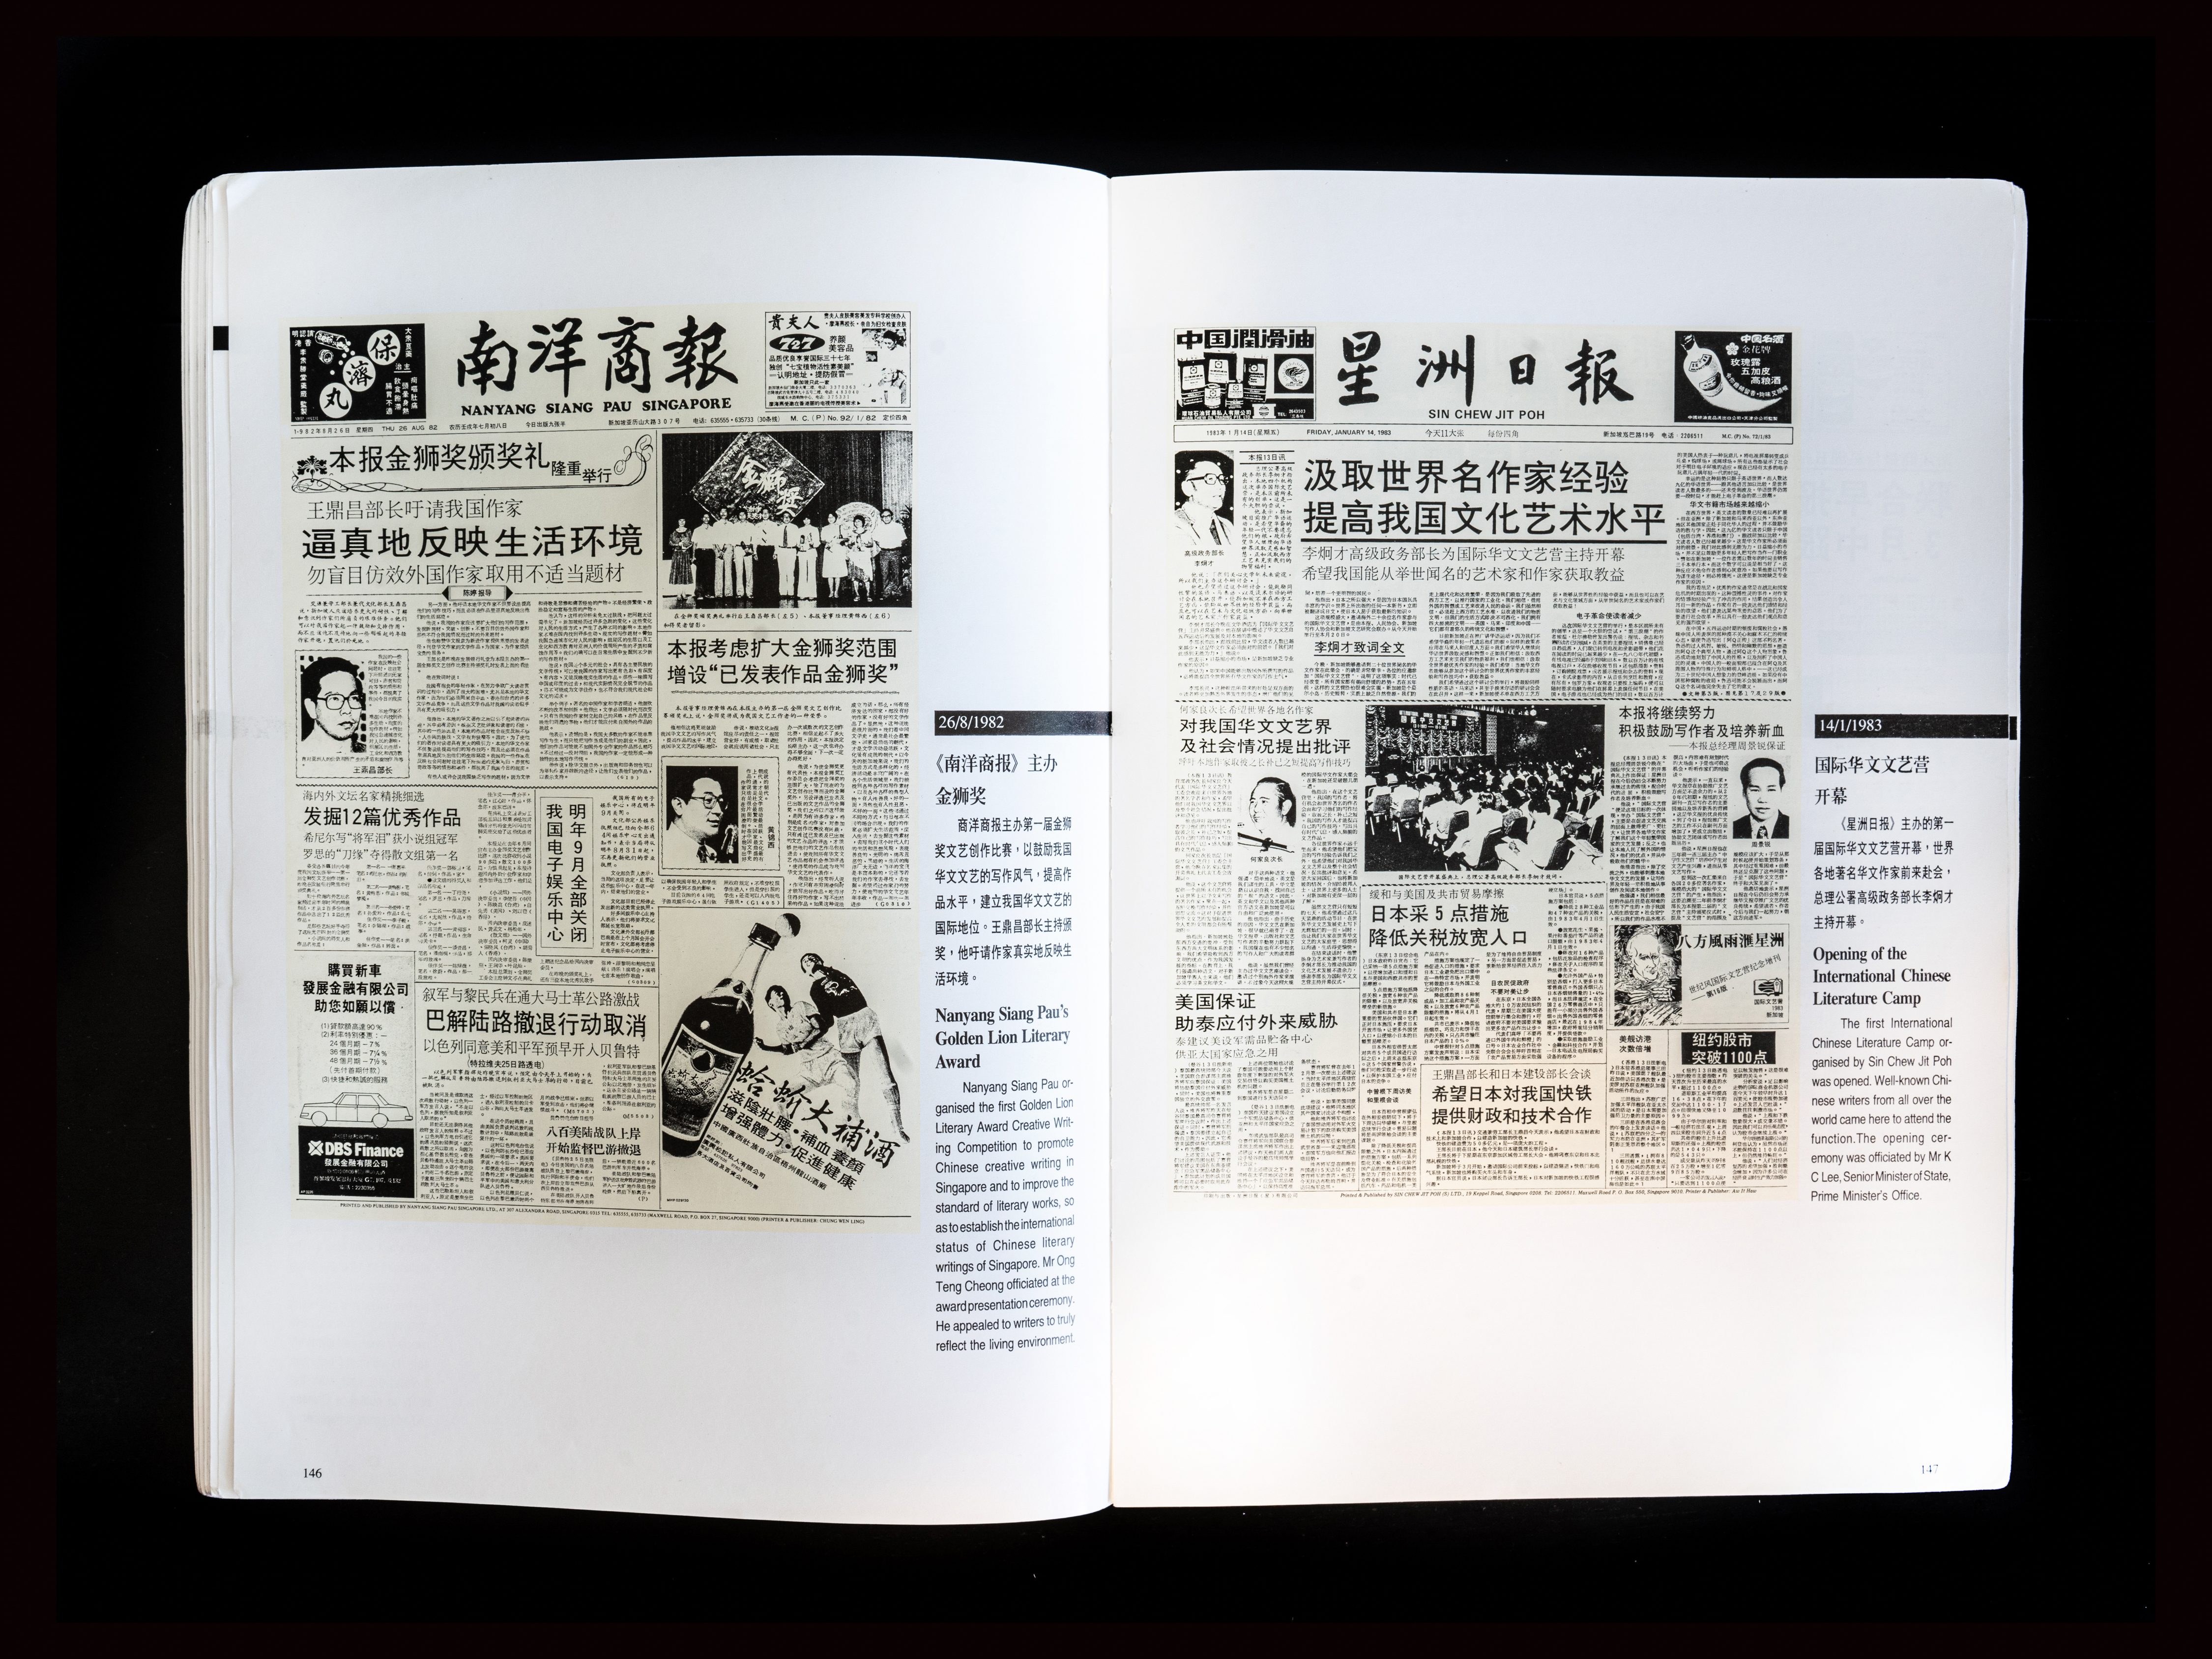 롄허짜오바오는 1920년대 중국인 사업가에 의해 창간된 두 신문이 합병하면서 1983년 탄생했다. '싱가포르 중국어 신문을 선도해온 우리의 70년 역사'라는 책자를 통해 1980년대와 1990년대 신문의 모습을 확인할 수 있다. /사진=Amrita Chandradas (Washington Post)